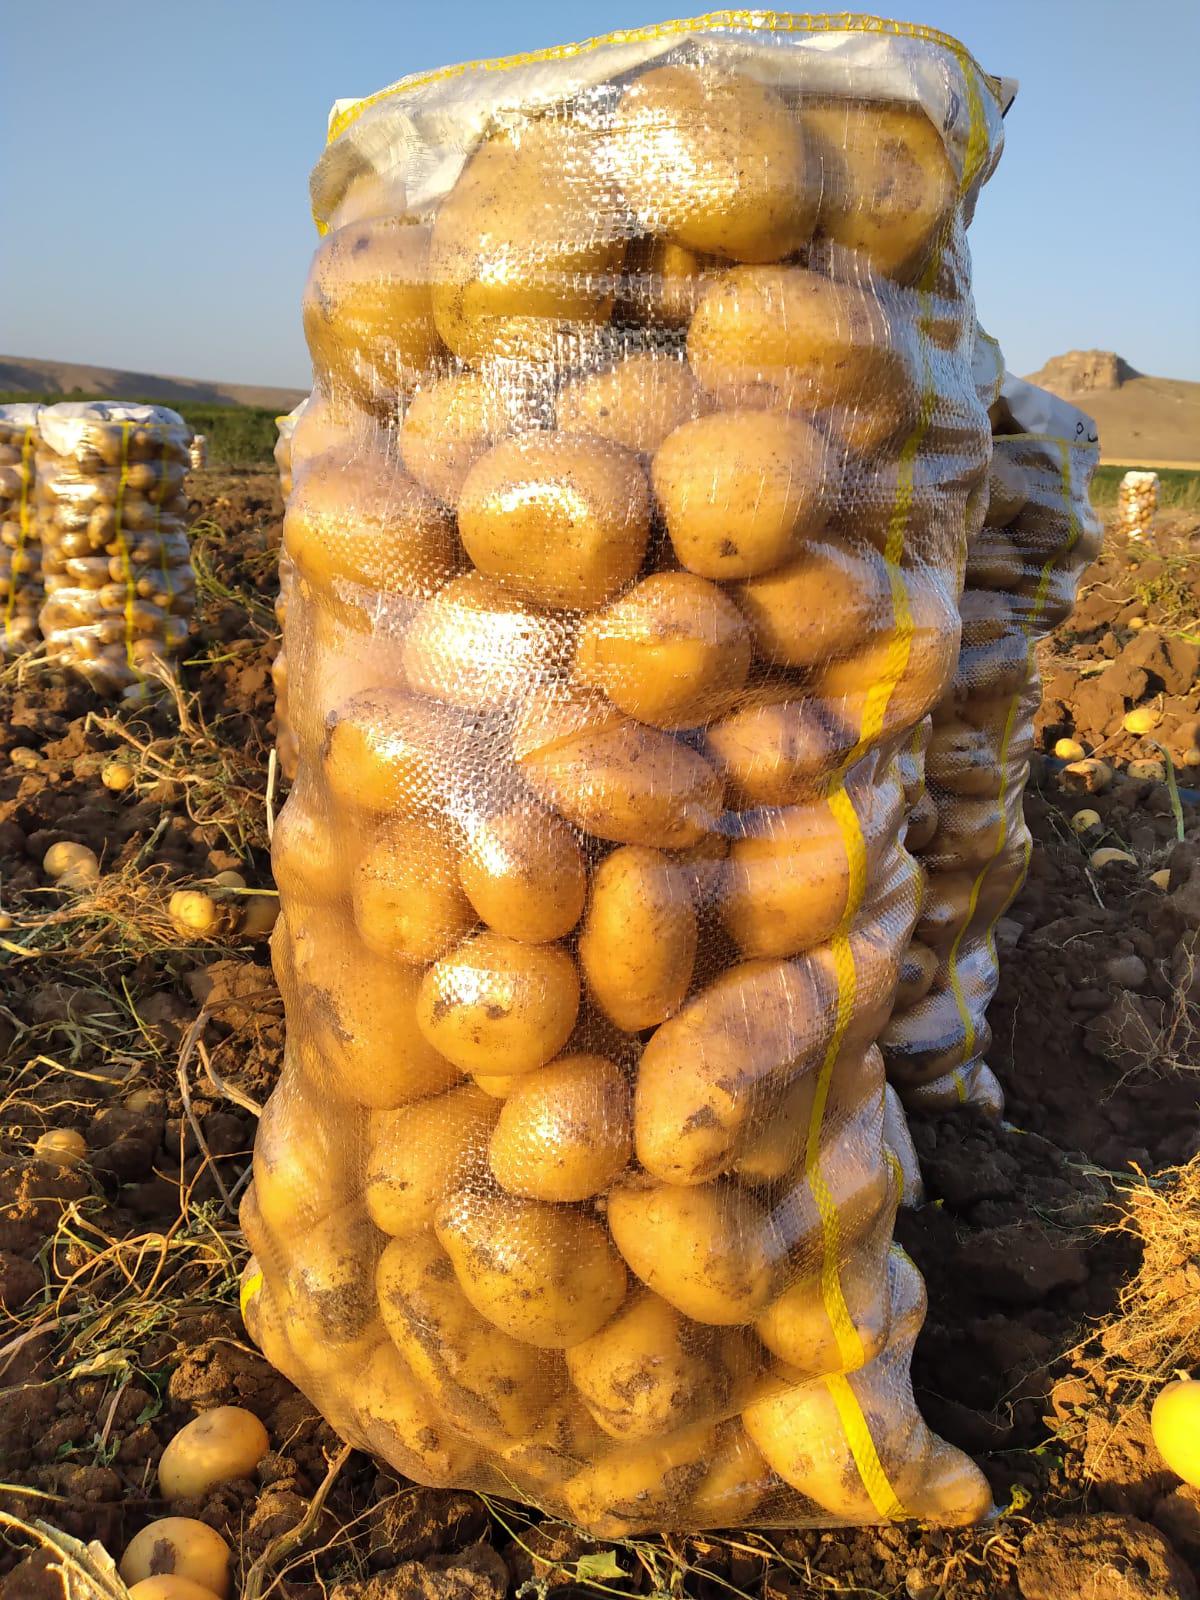 Patates - Üretici Şaban Akkoyun 2300 tl fiyat ile 100.000 kilogram estrella çeşidi patates satmak istiyor